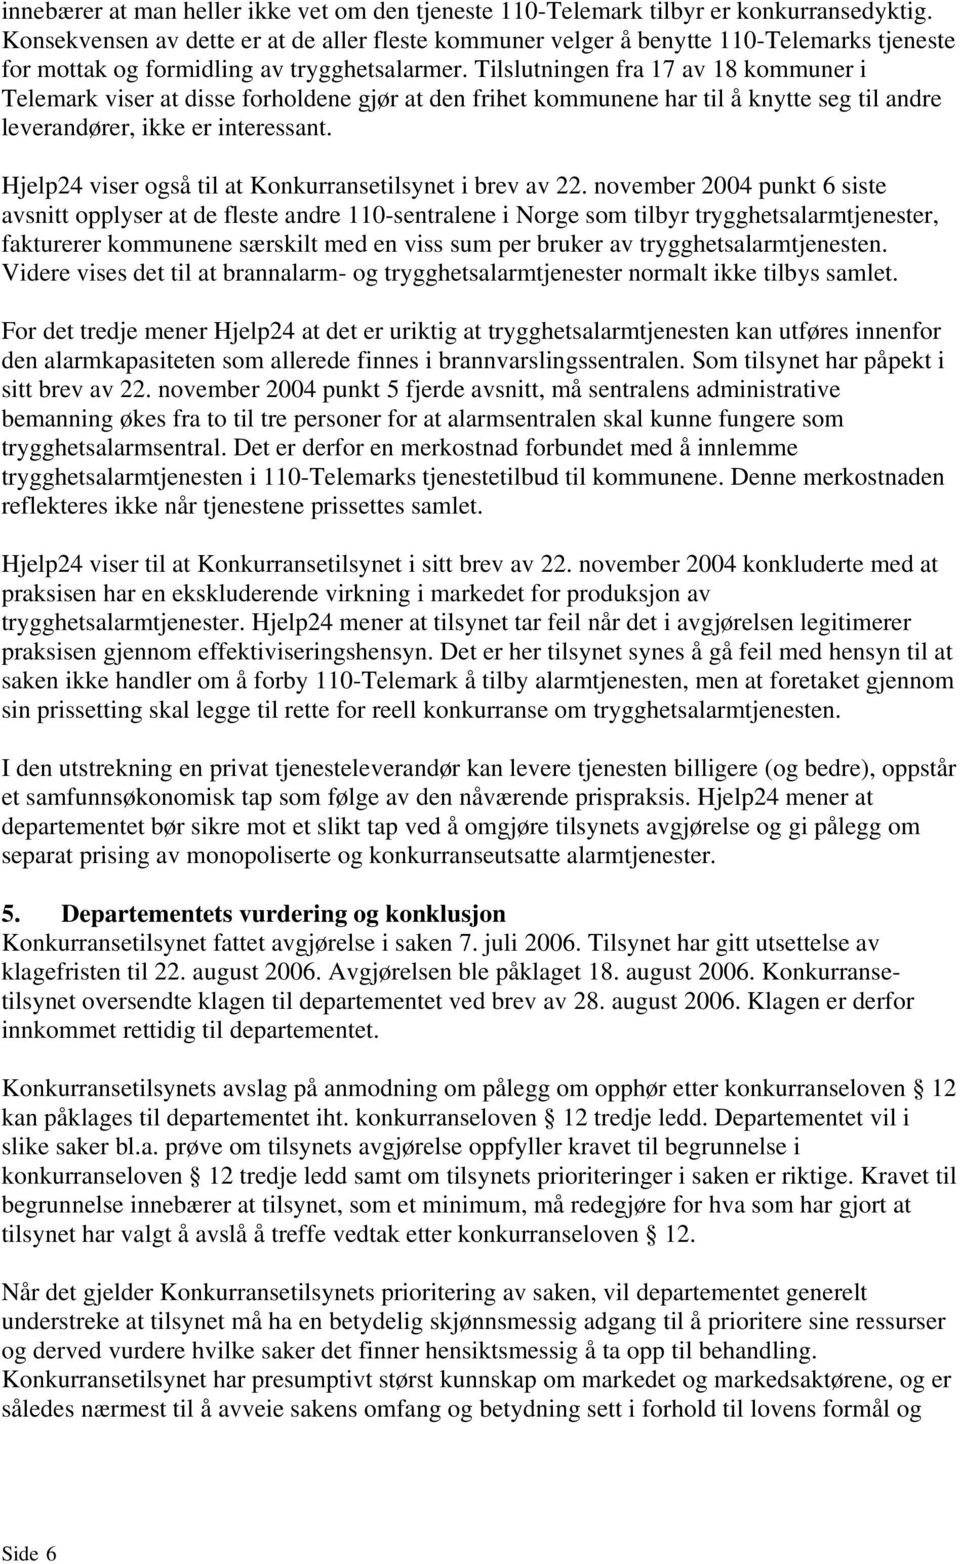 Tilslutningen fra 17 av 18 kommuner i Telemark viser at disse forholdene gjør at den frihet kommunene har til å knytte seg til andre leverandører, ikke er interessant.